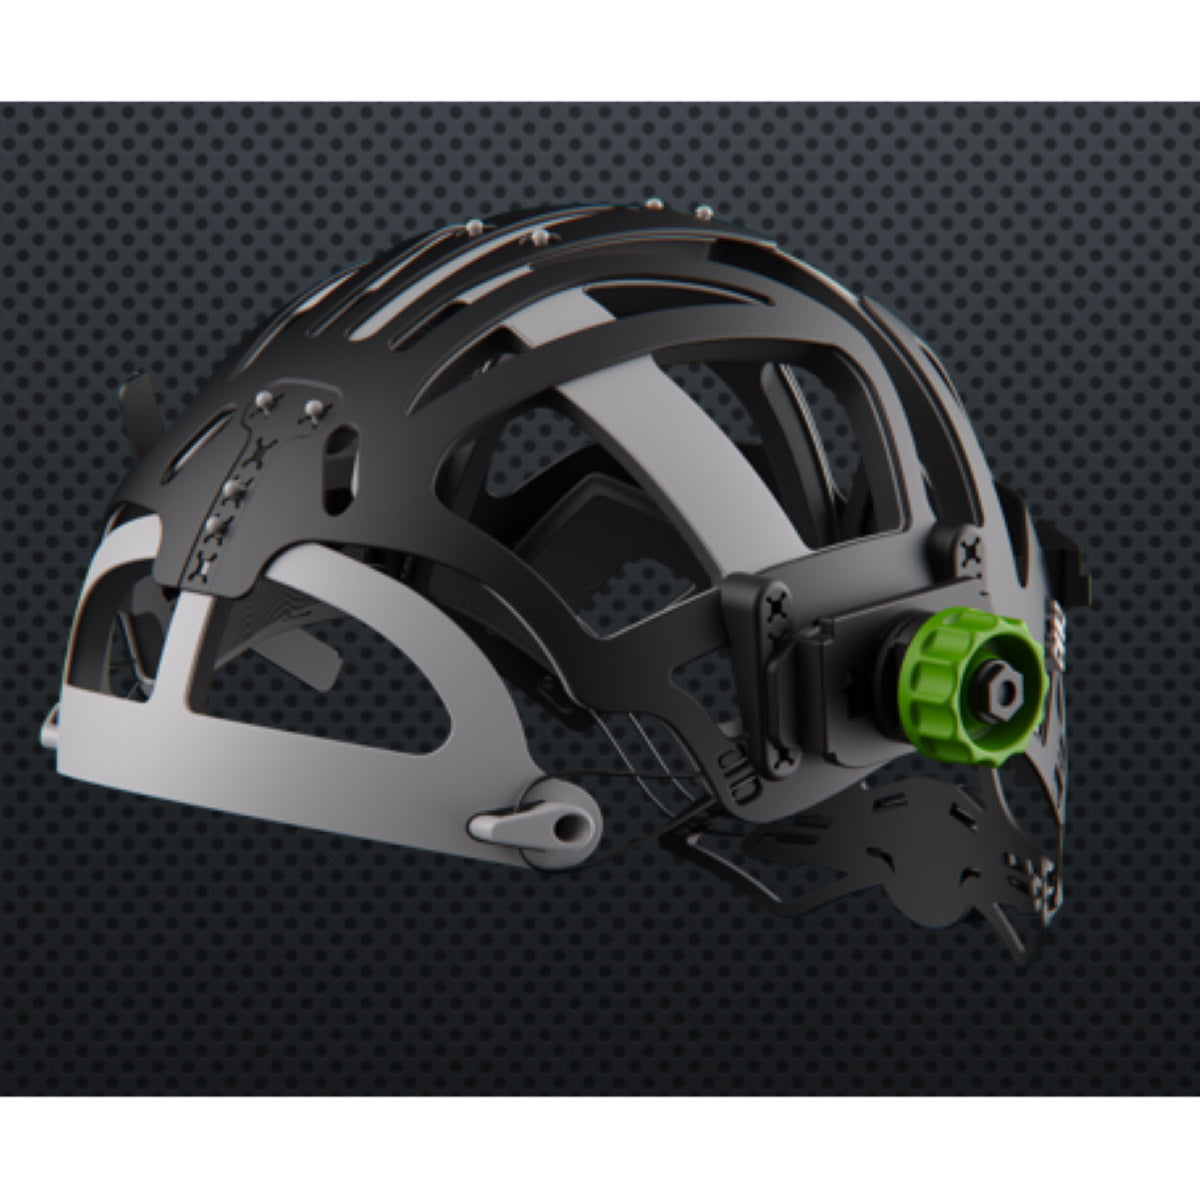 Optrel Silver Panoramaxx CLT Welding Helmet for E3000 PAPR (4441.781-US)